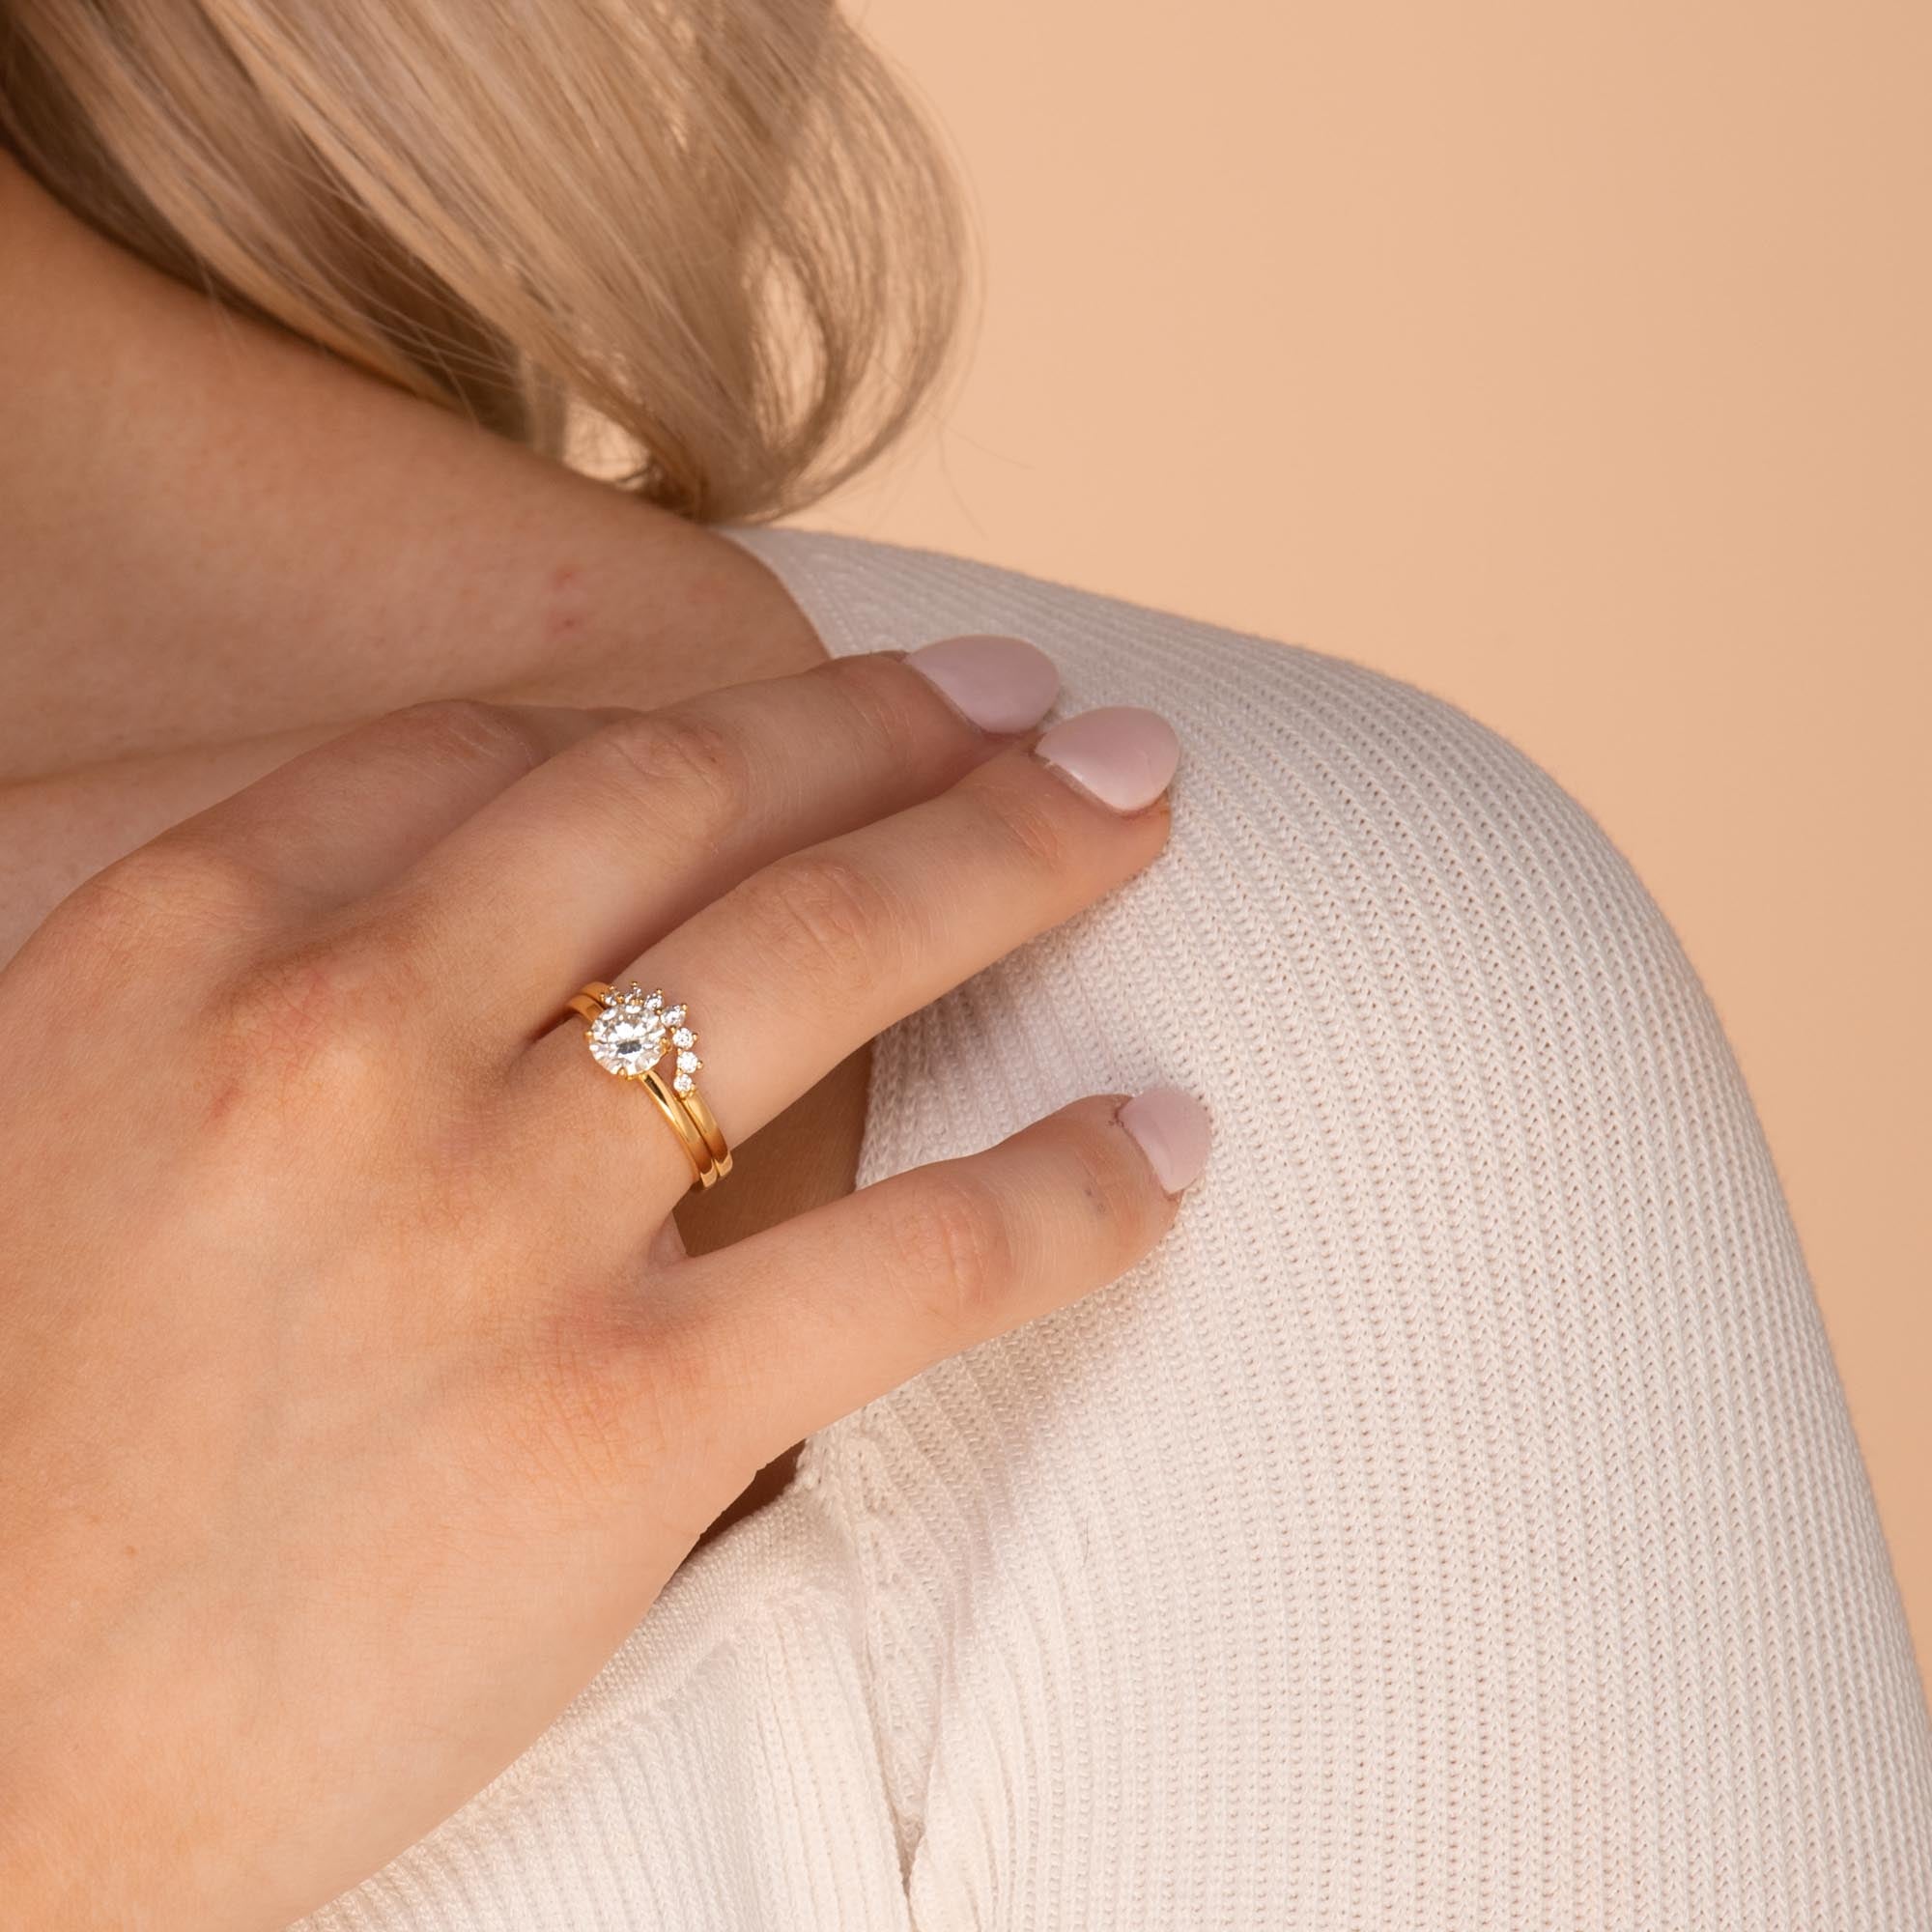 1 ct The Peyton Moissanite Diamond Engagement Ring